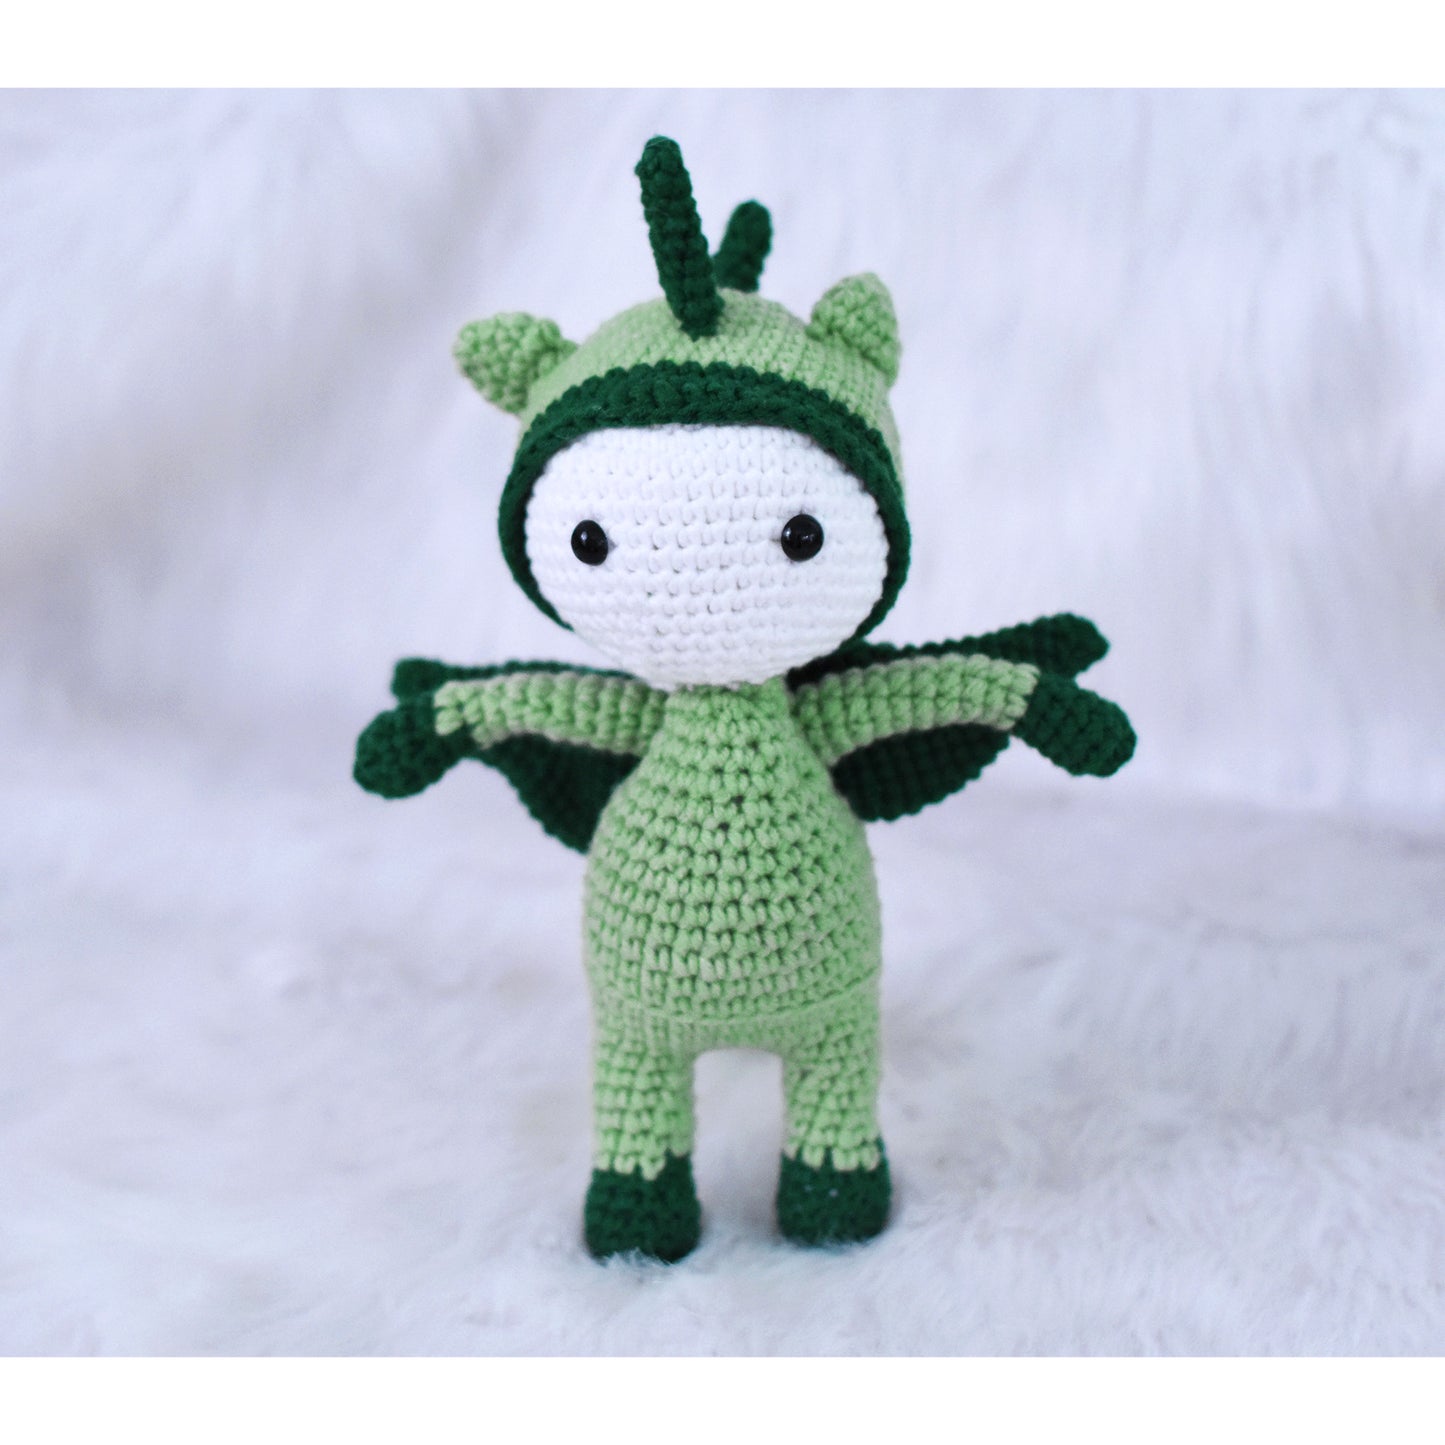 Boy in Flying Dinosaur Outfit Handmade Amigurumi Stuffed Knit Crochet Doll VAC